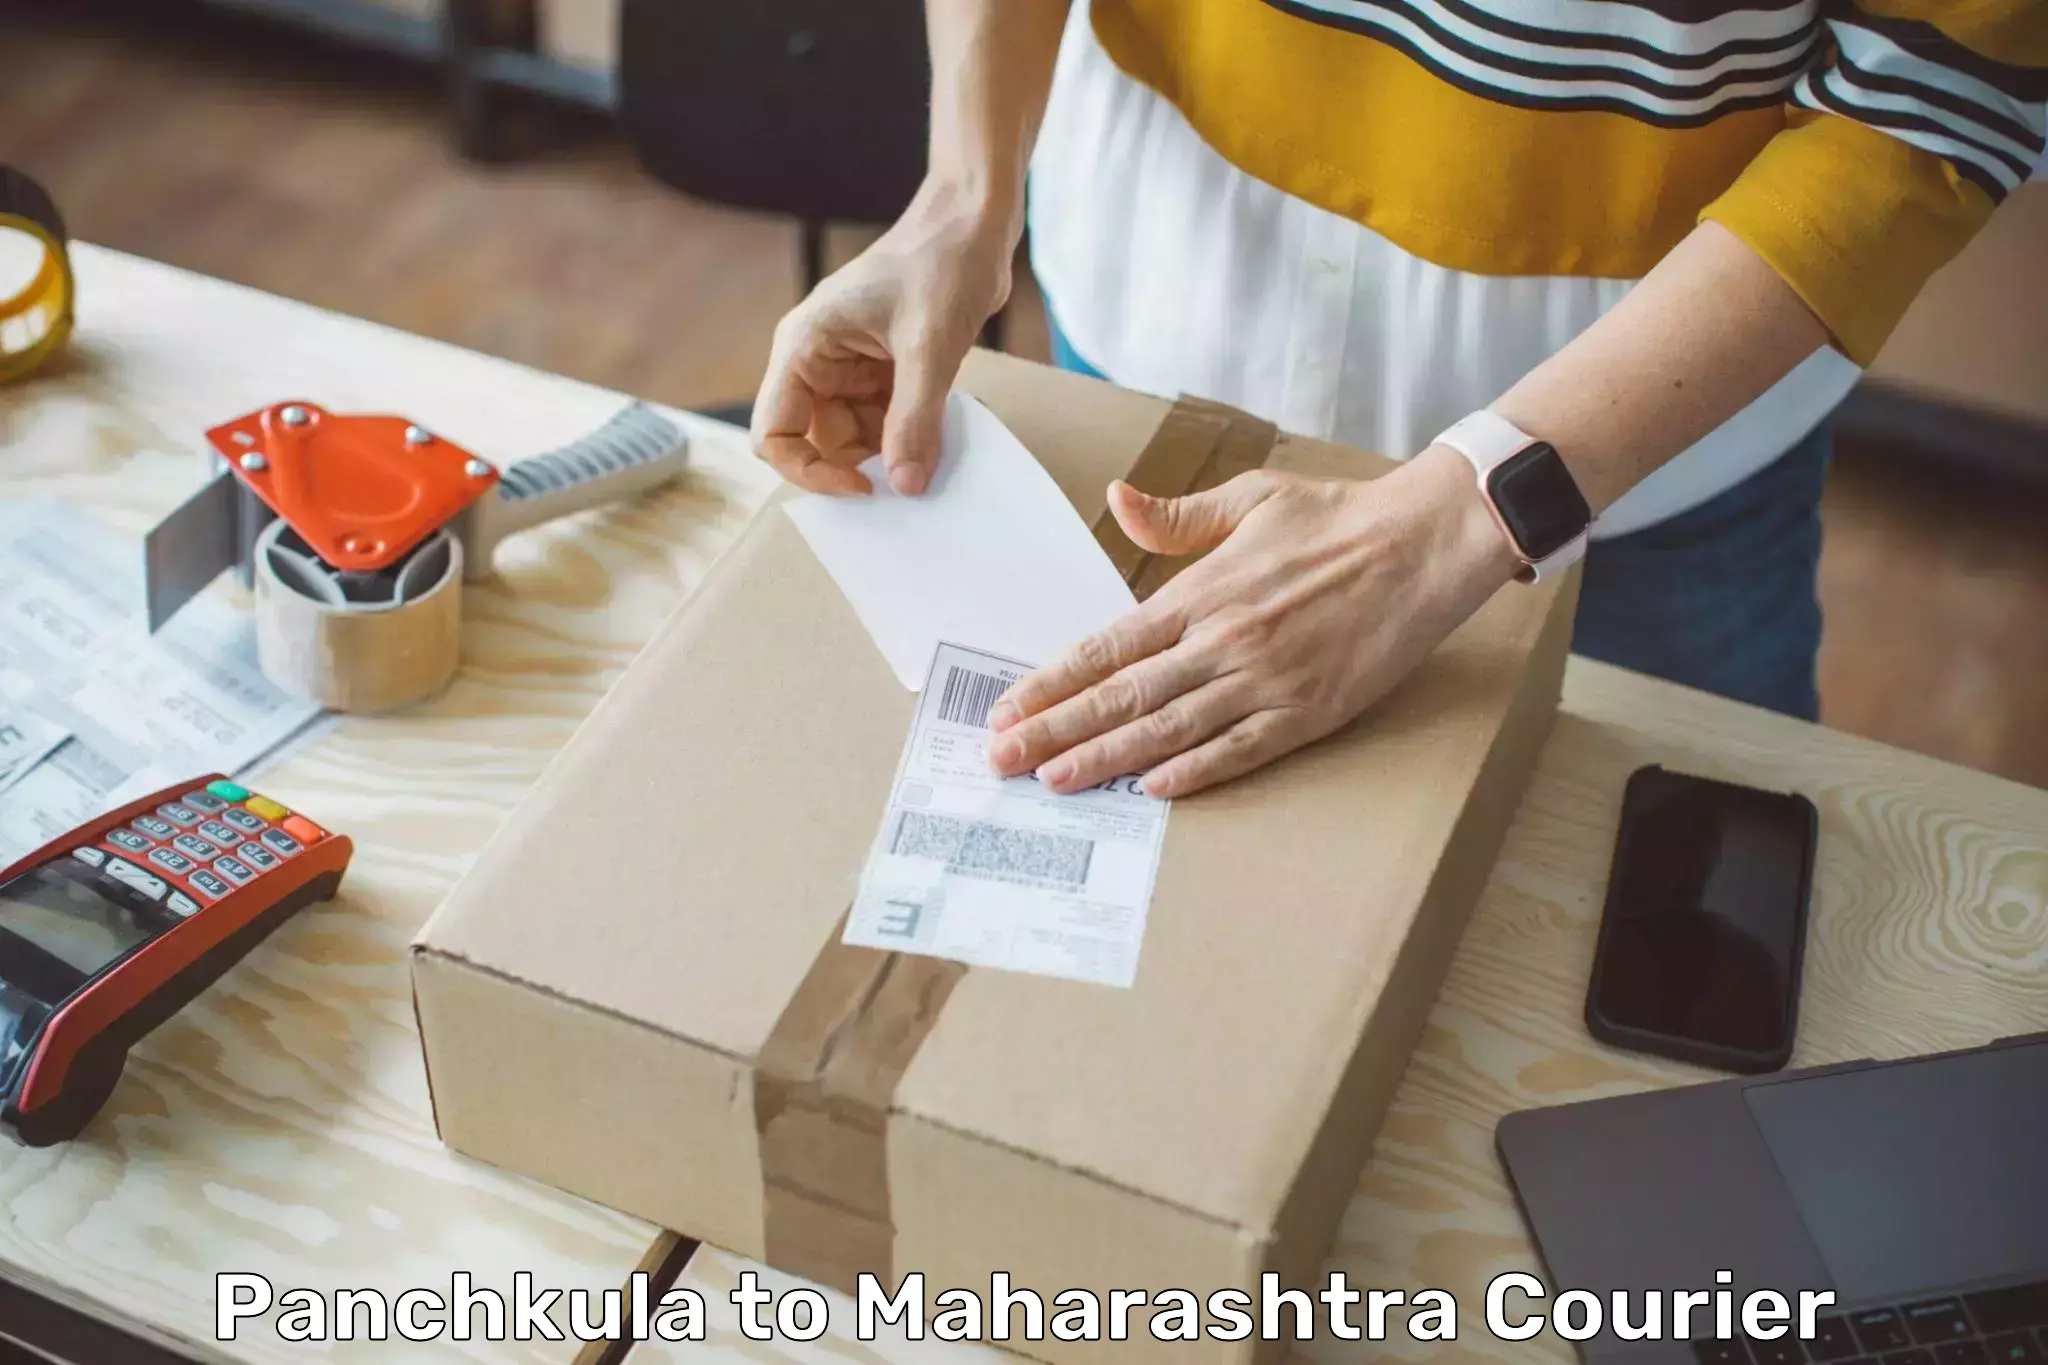 Express delivery capabilities Panchkula to Maharashtra